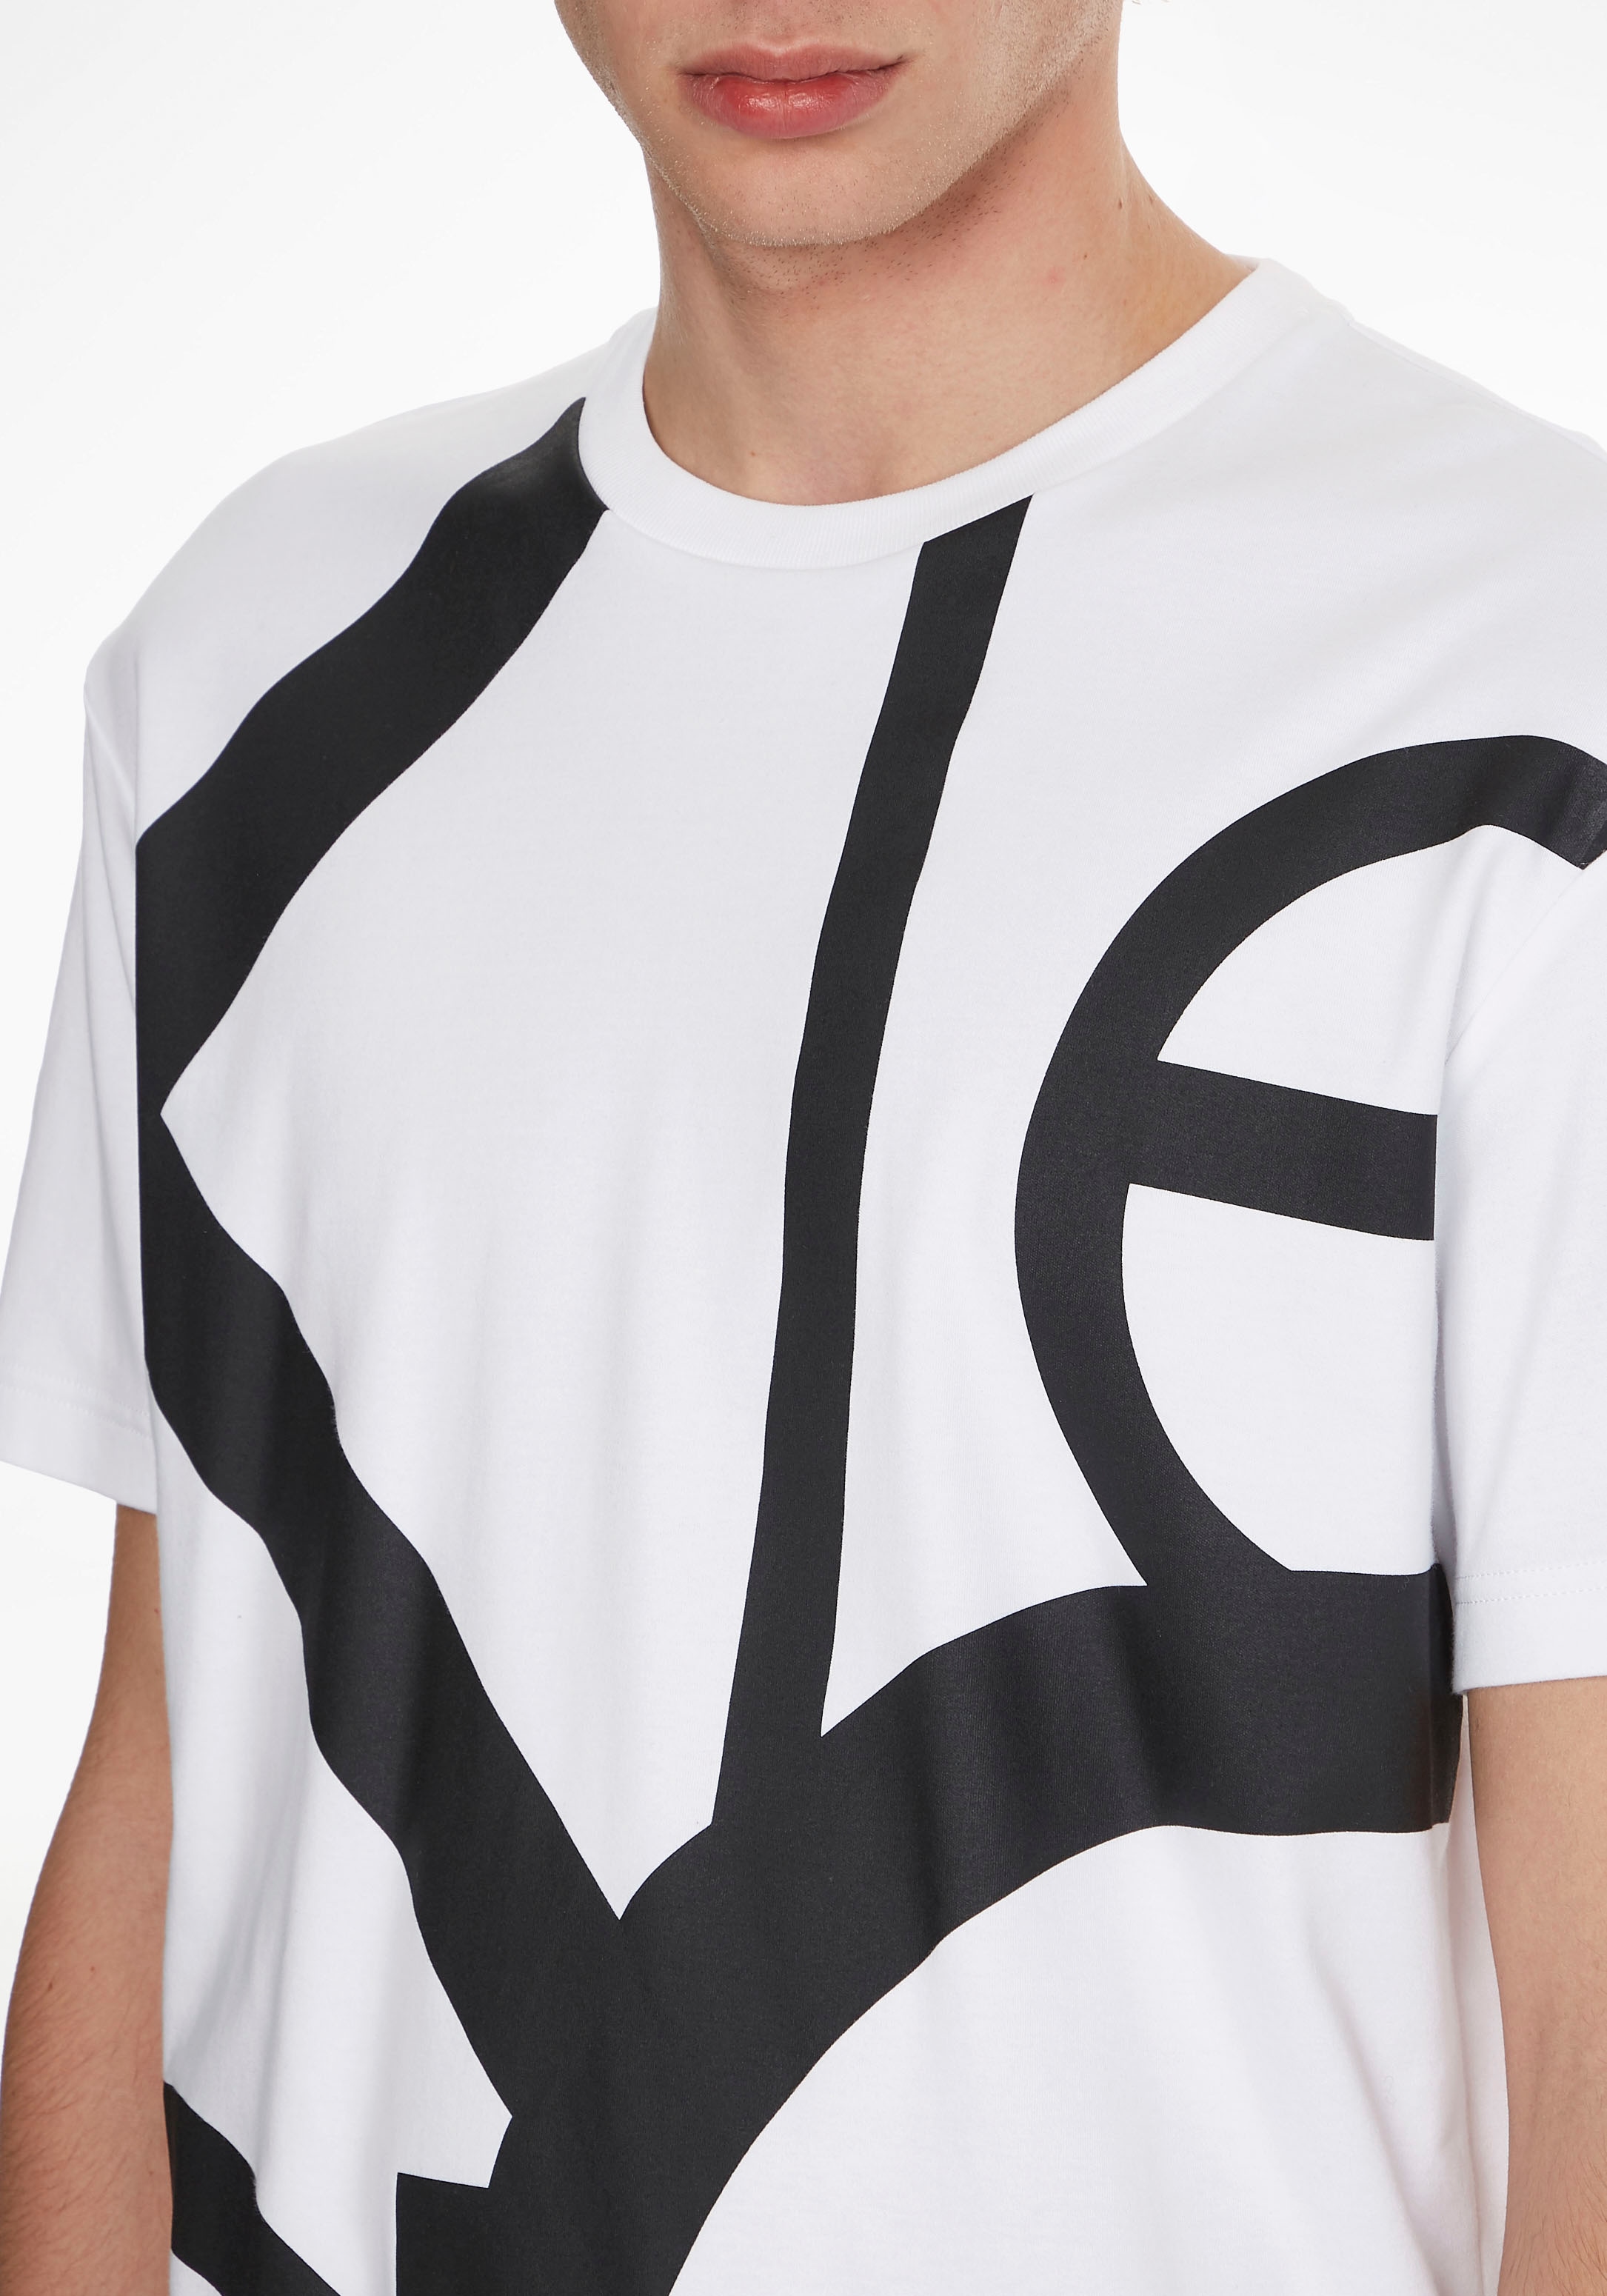 »ABSTRACT T-SHIRT« confortablement Calvin Klein en LOGO Mode COMFORT Acheter ligne T-Shirt